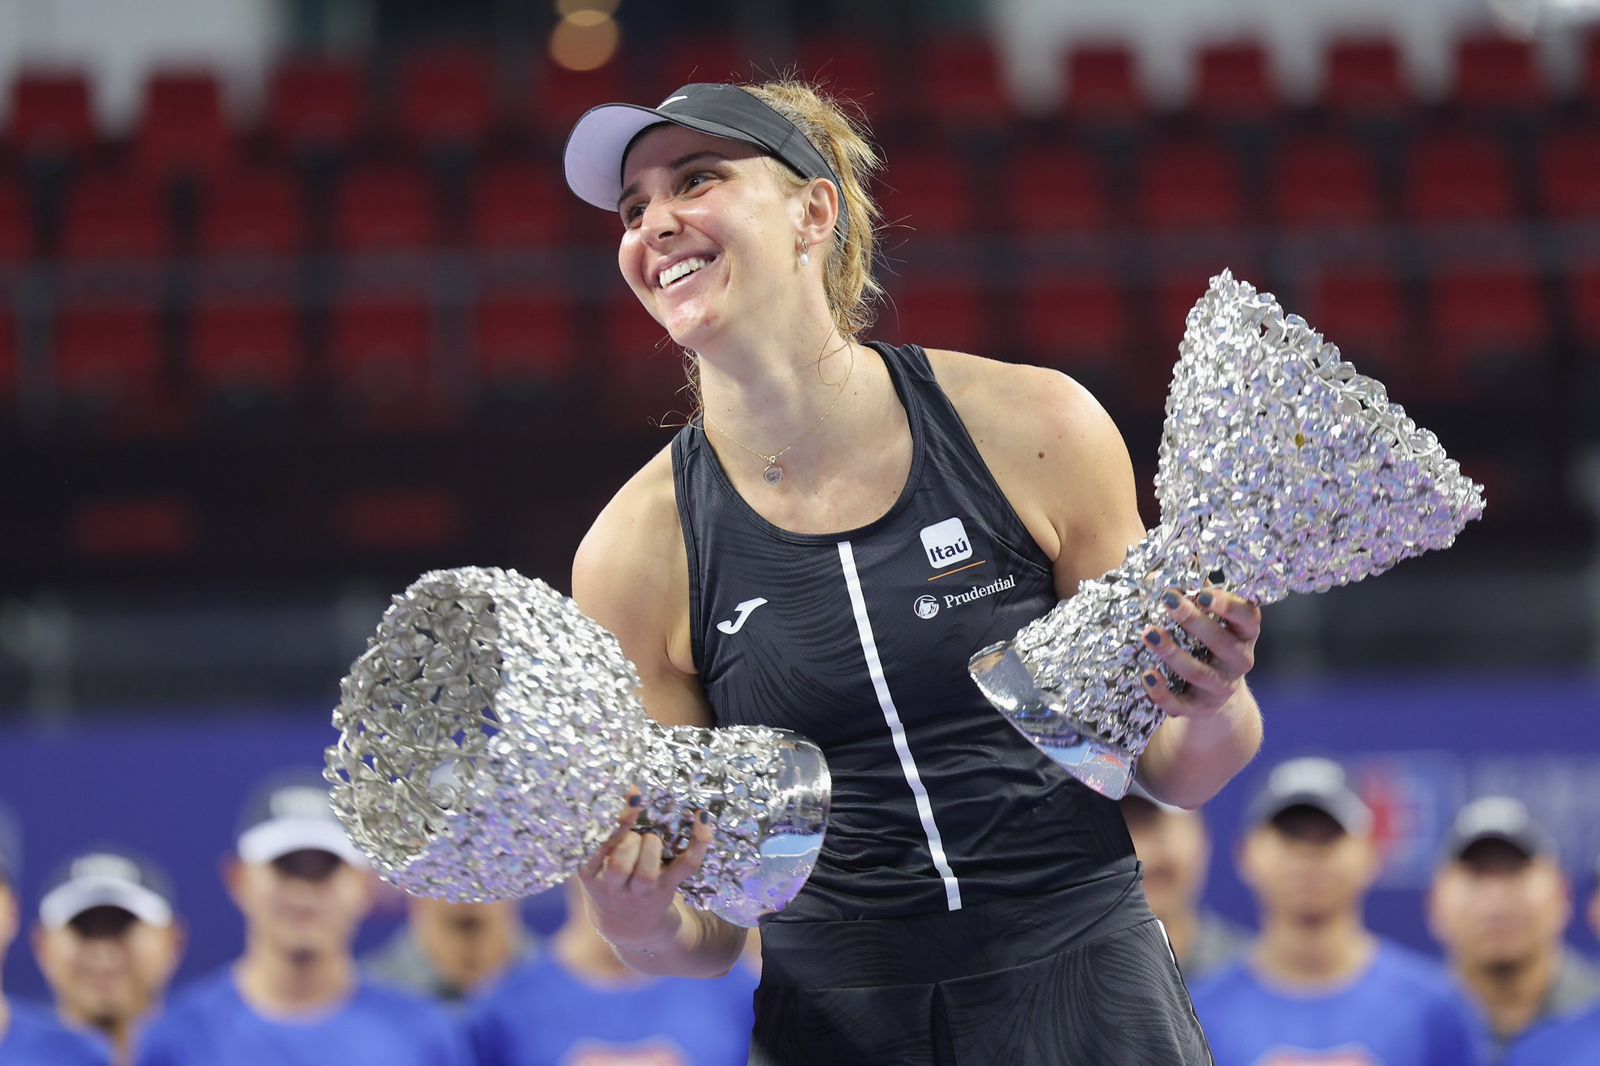 WTA elege os melhores torneios da temporada - Tenis News